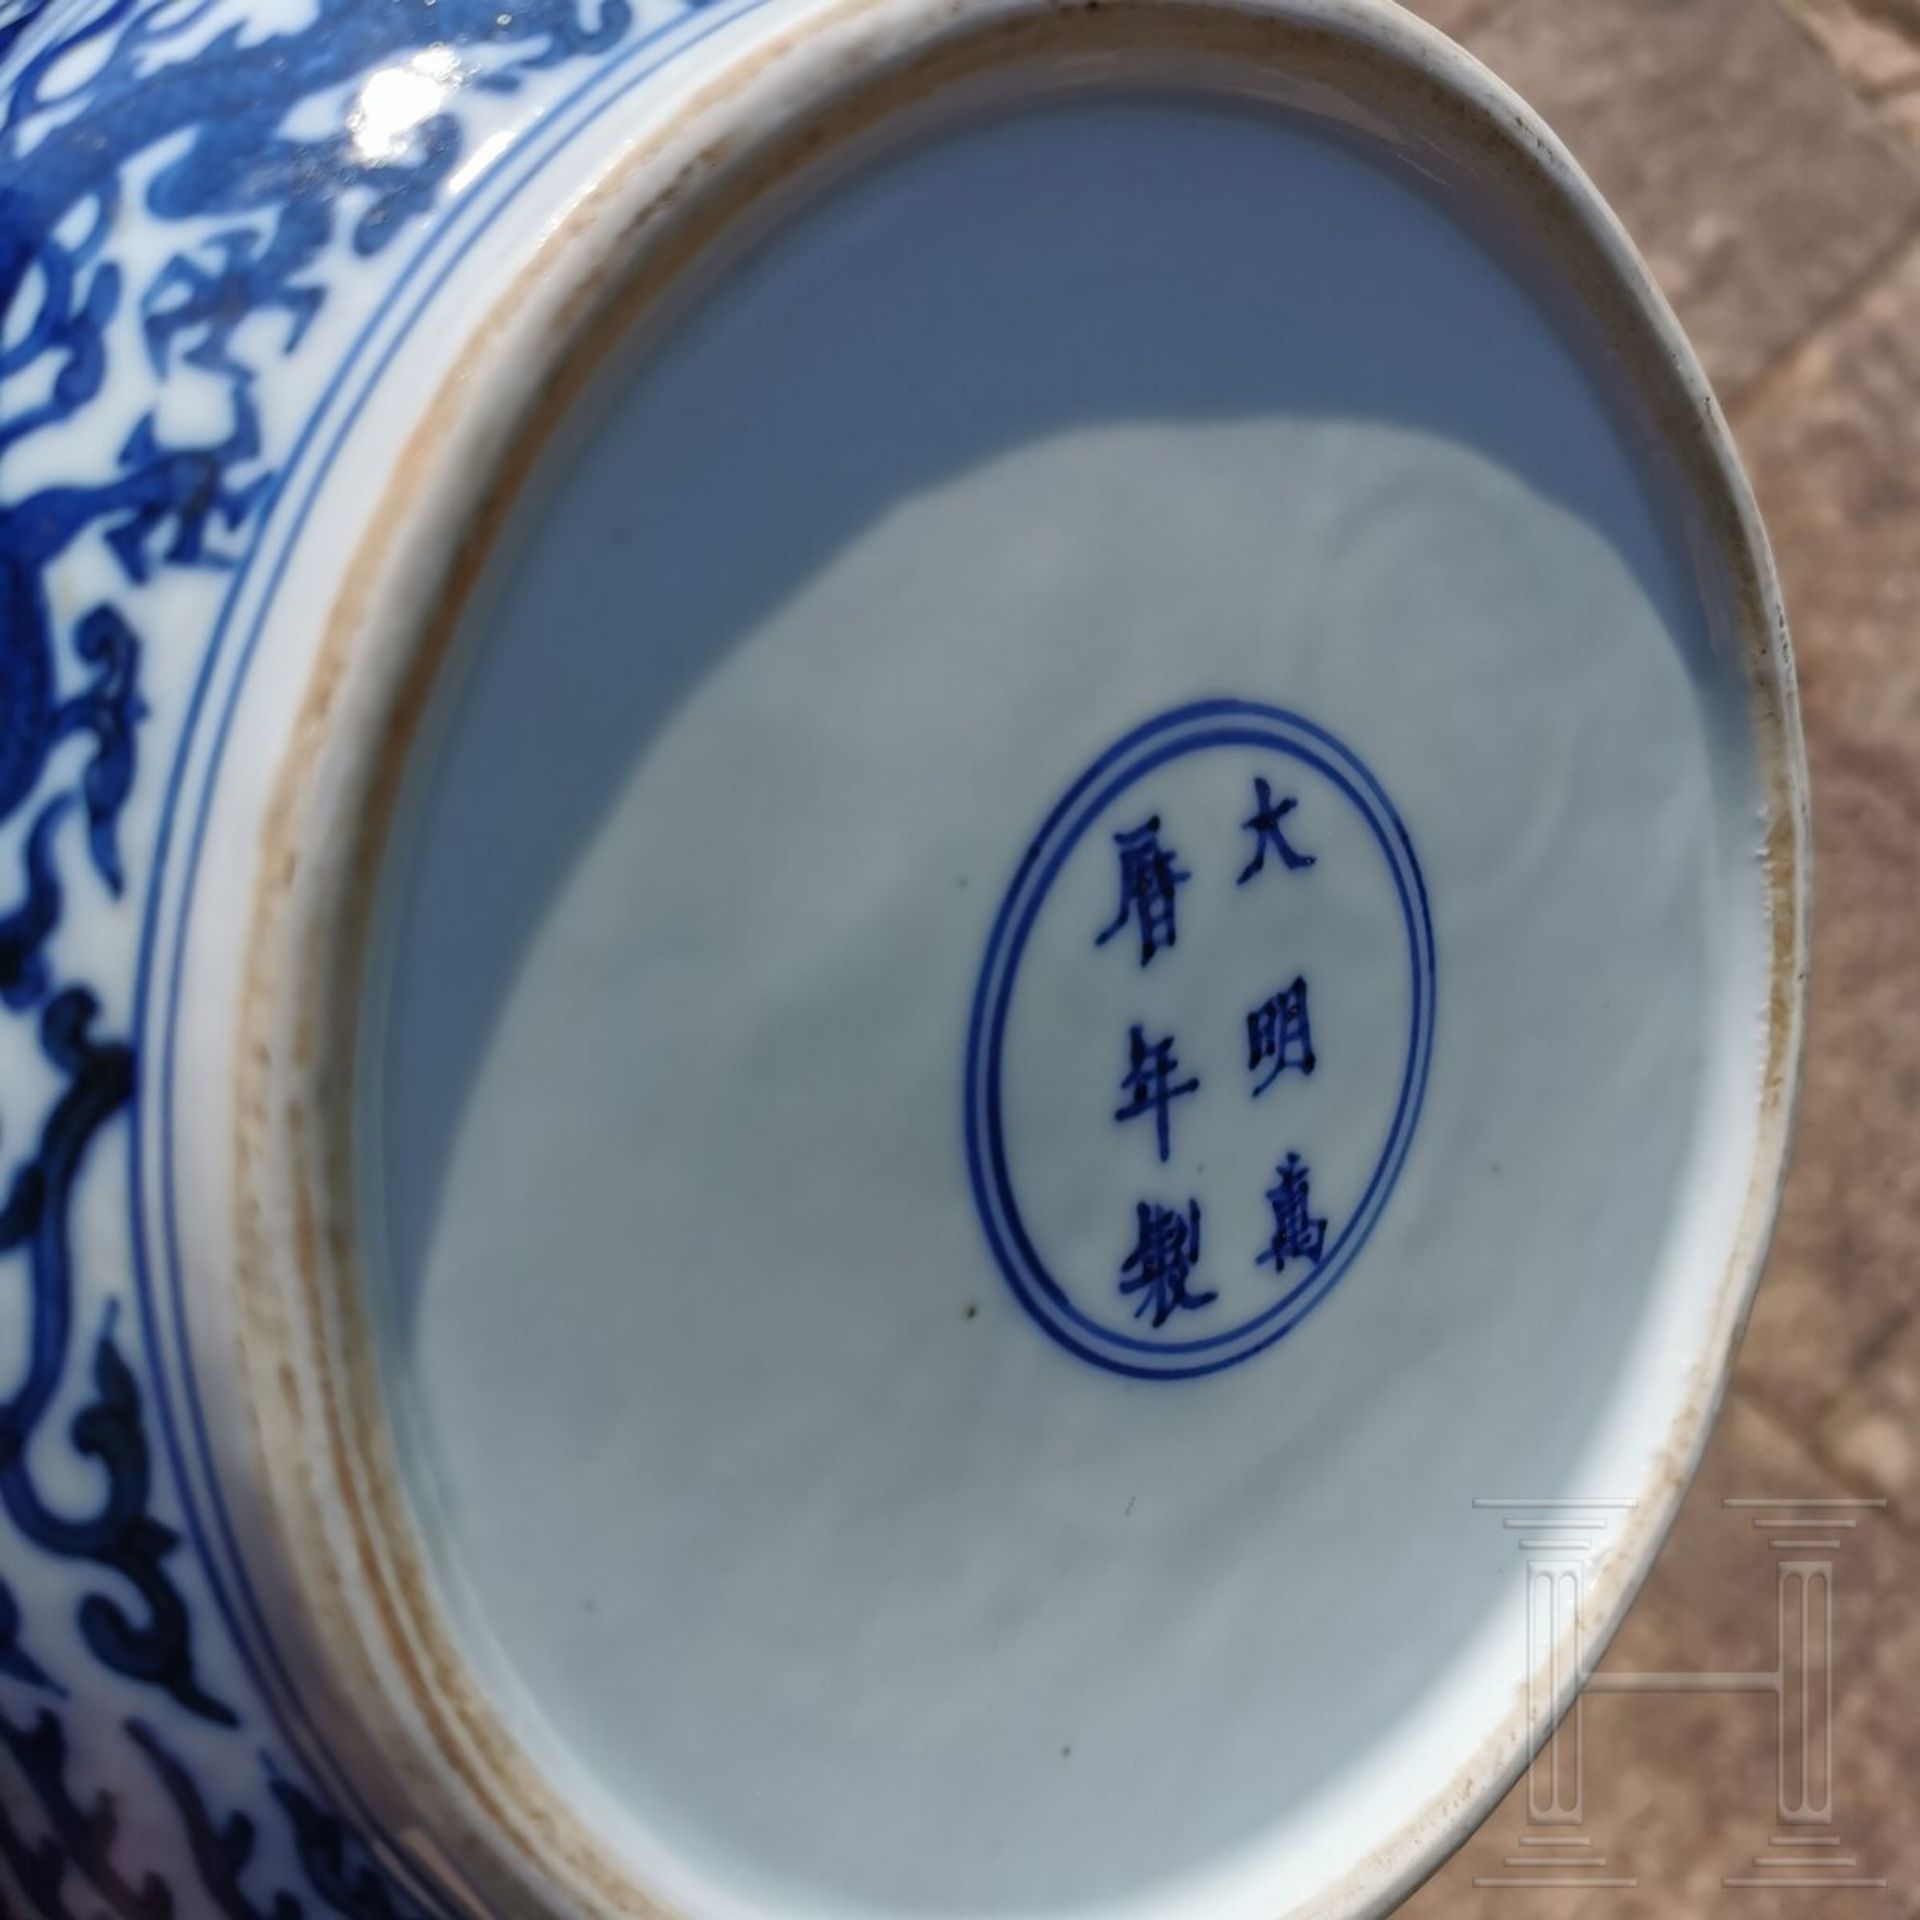 Große blaue-weiße Deckeldose mit Drache und Wanli-Sechszeichenmarke, China, 18./19. Jhdt. - Image 16 of 17